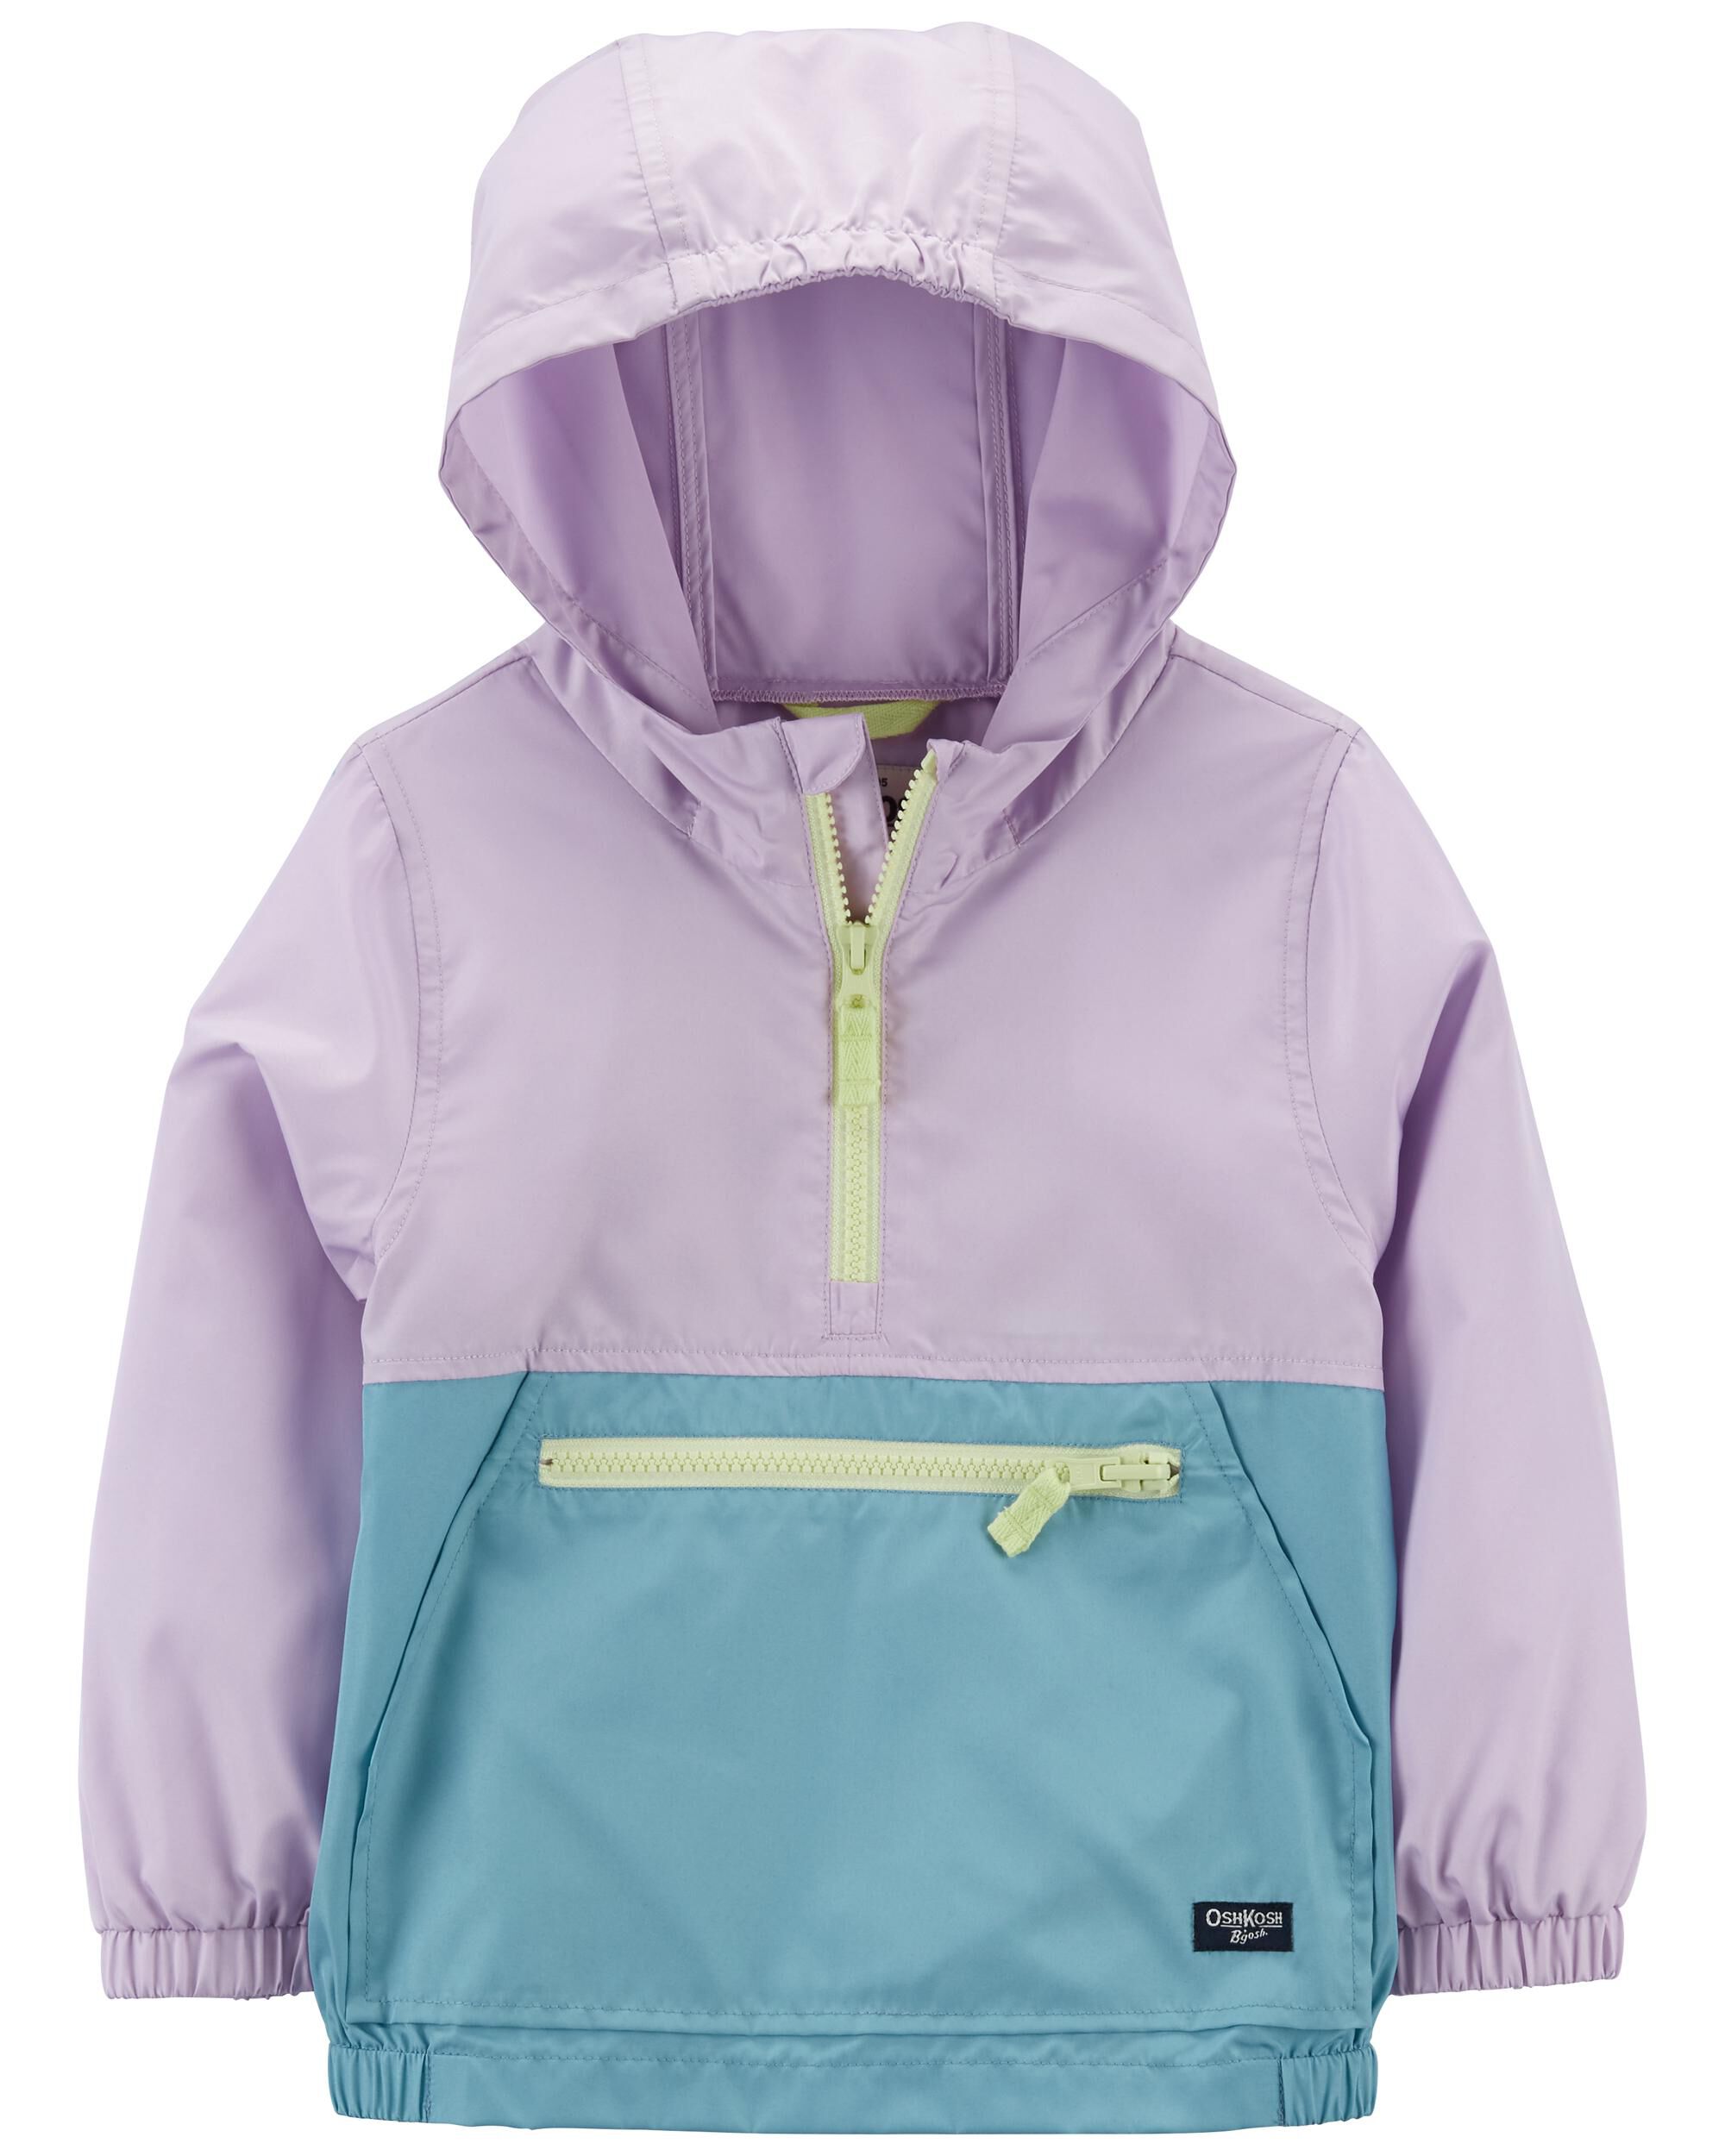 Carter's Girls Purple Unicorn Fleece Lined Jacket Size 2T 3T 4T 4 5/6 6X 